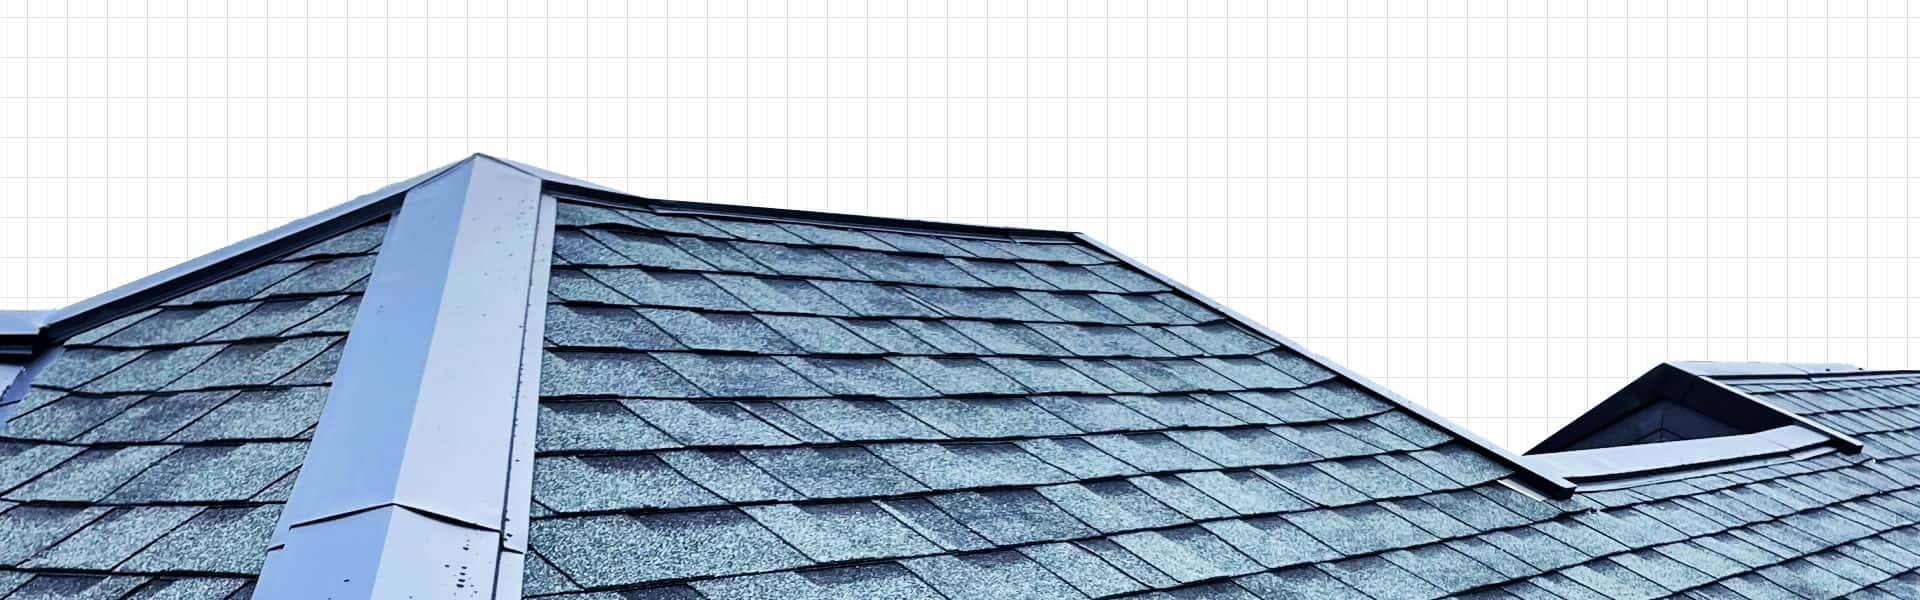 奈良のハイテク屋根リフォーム店 雨漏り診断士在籍 安心のW保証 平松塗装店の屋根リフォームが選ばれる理由とは？